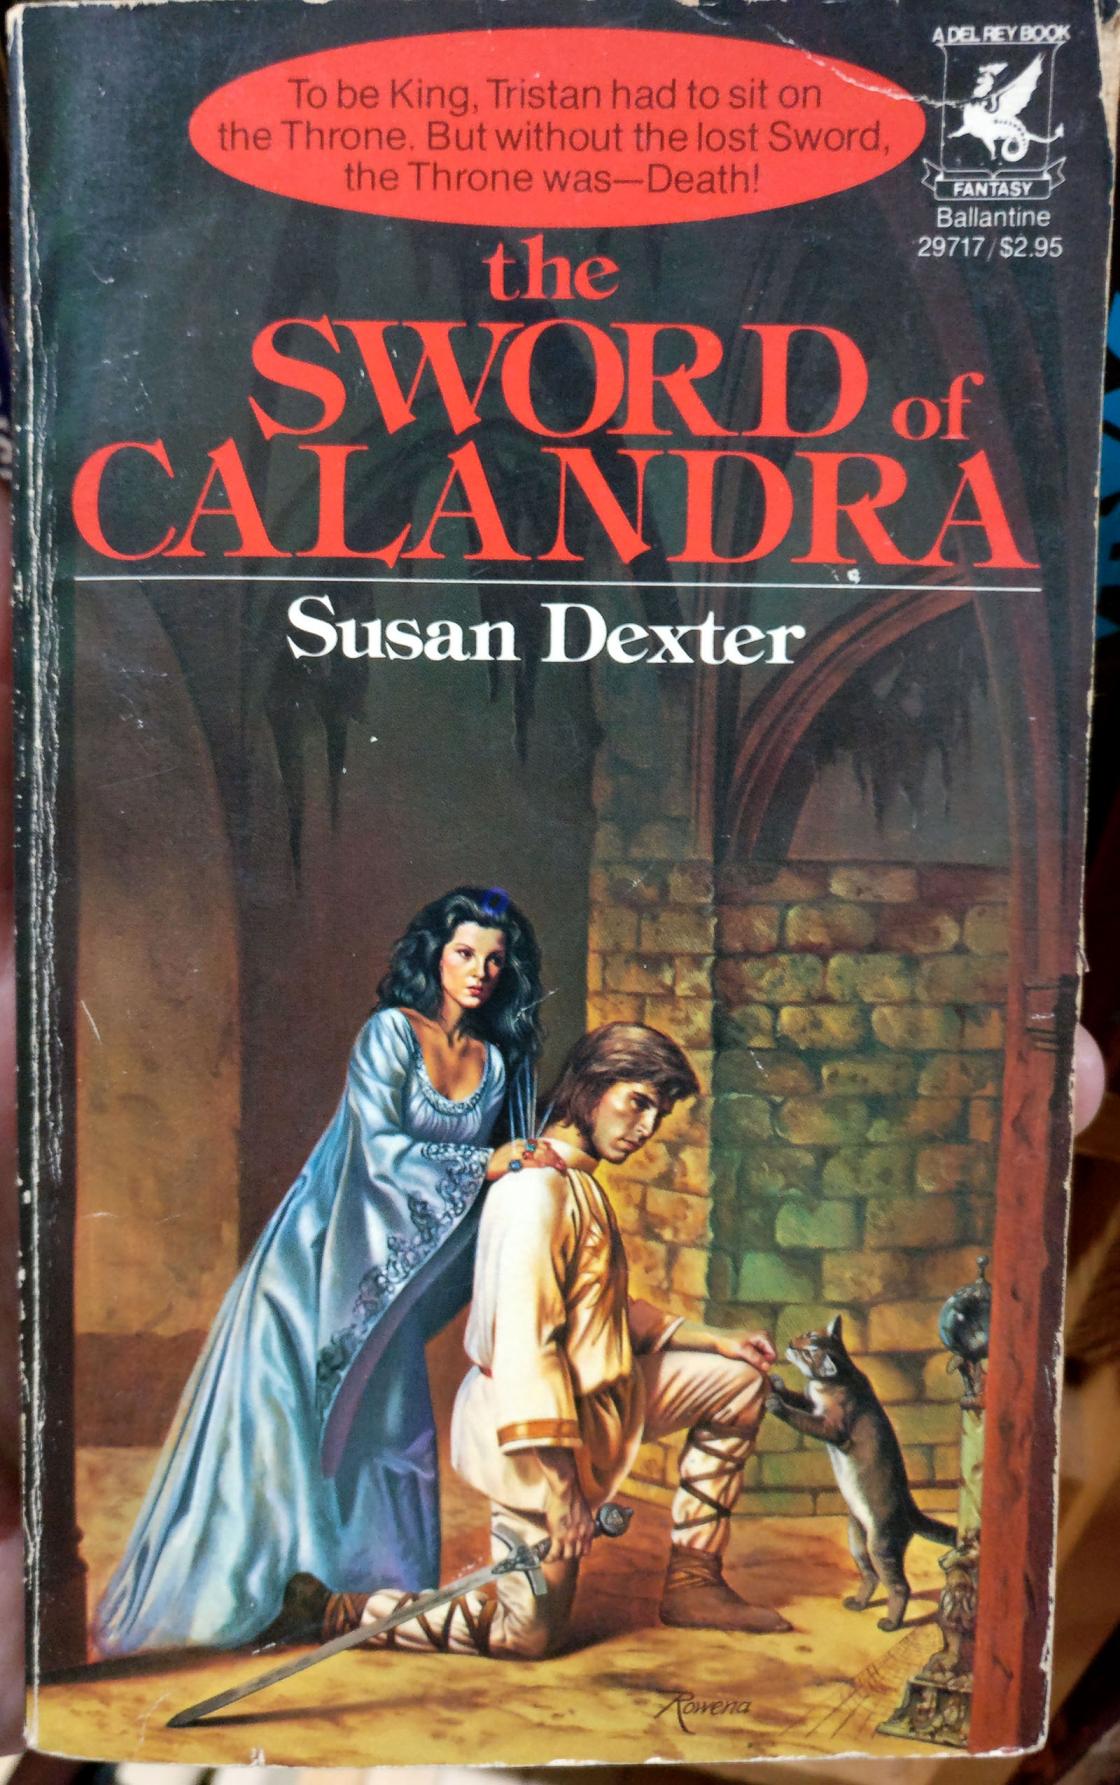 A sword-id tale!